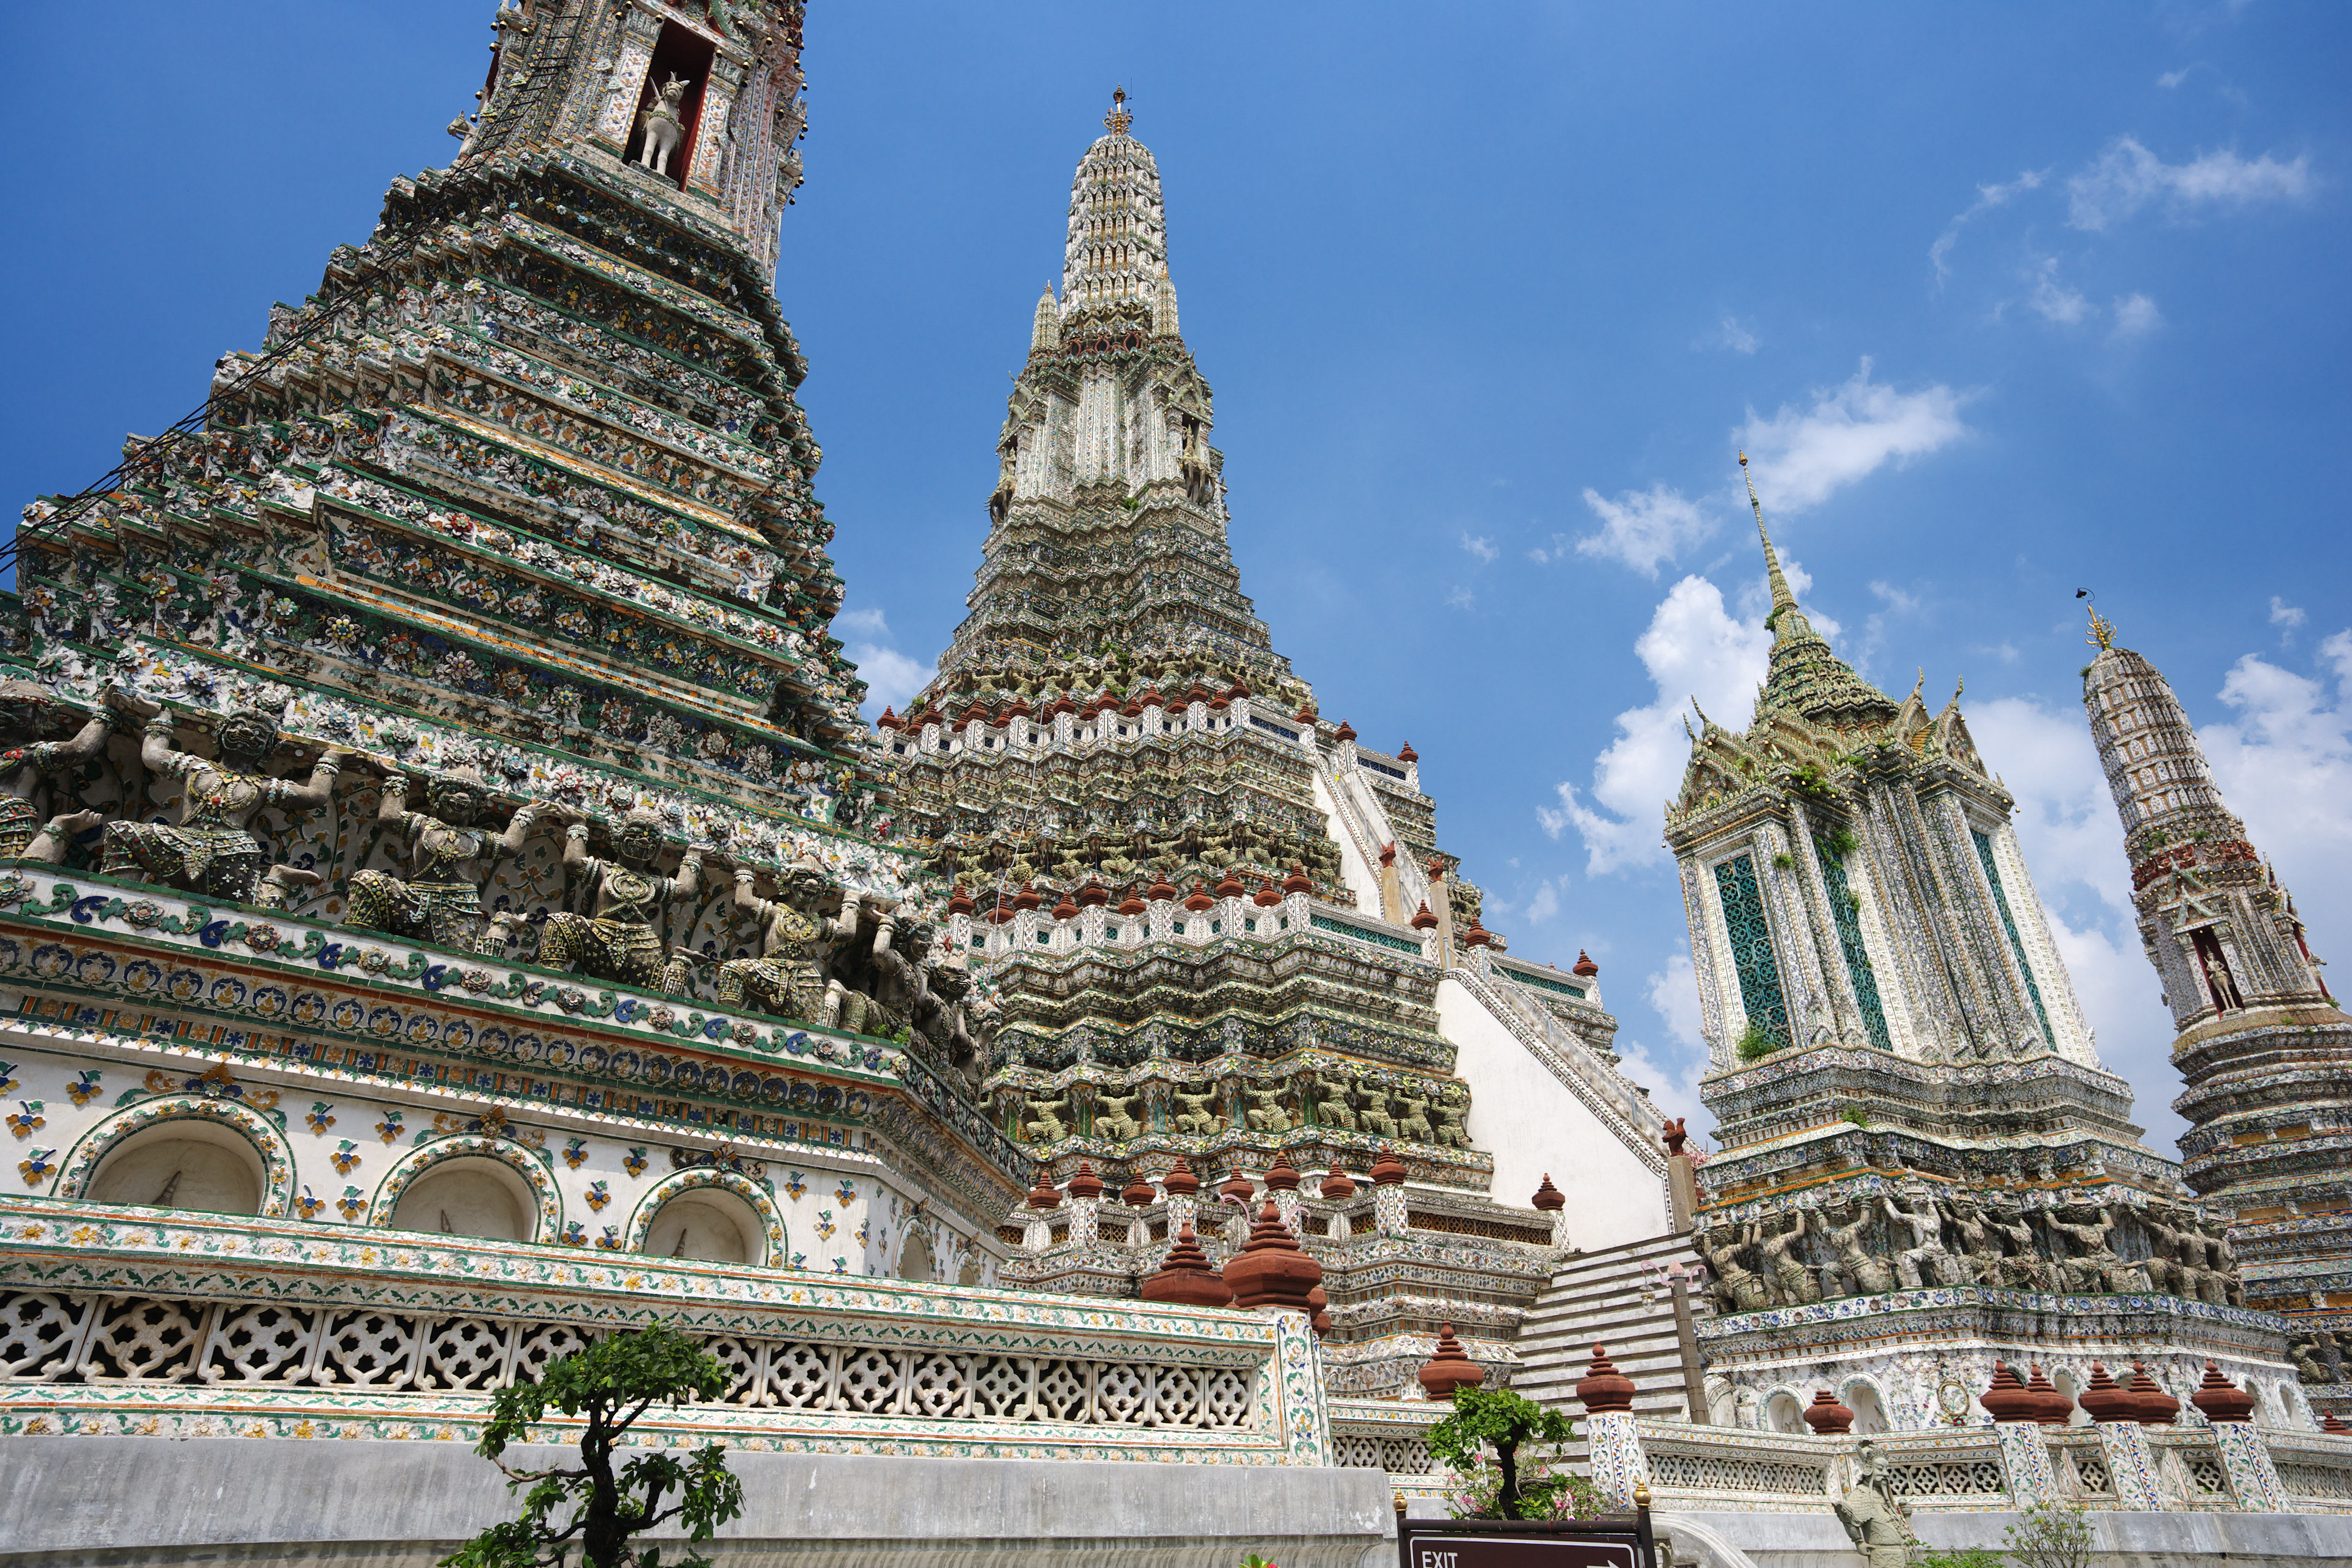 fotografia, material, livra, ajardine, imagine, proveja fotografia,Templo de Dawn, templo, Imagem budista, azulejo, Bangkok